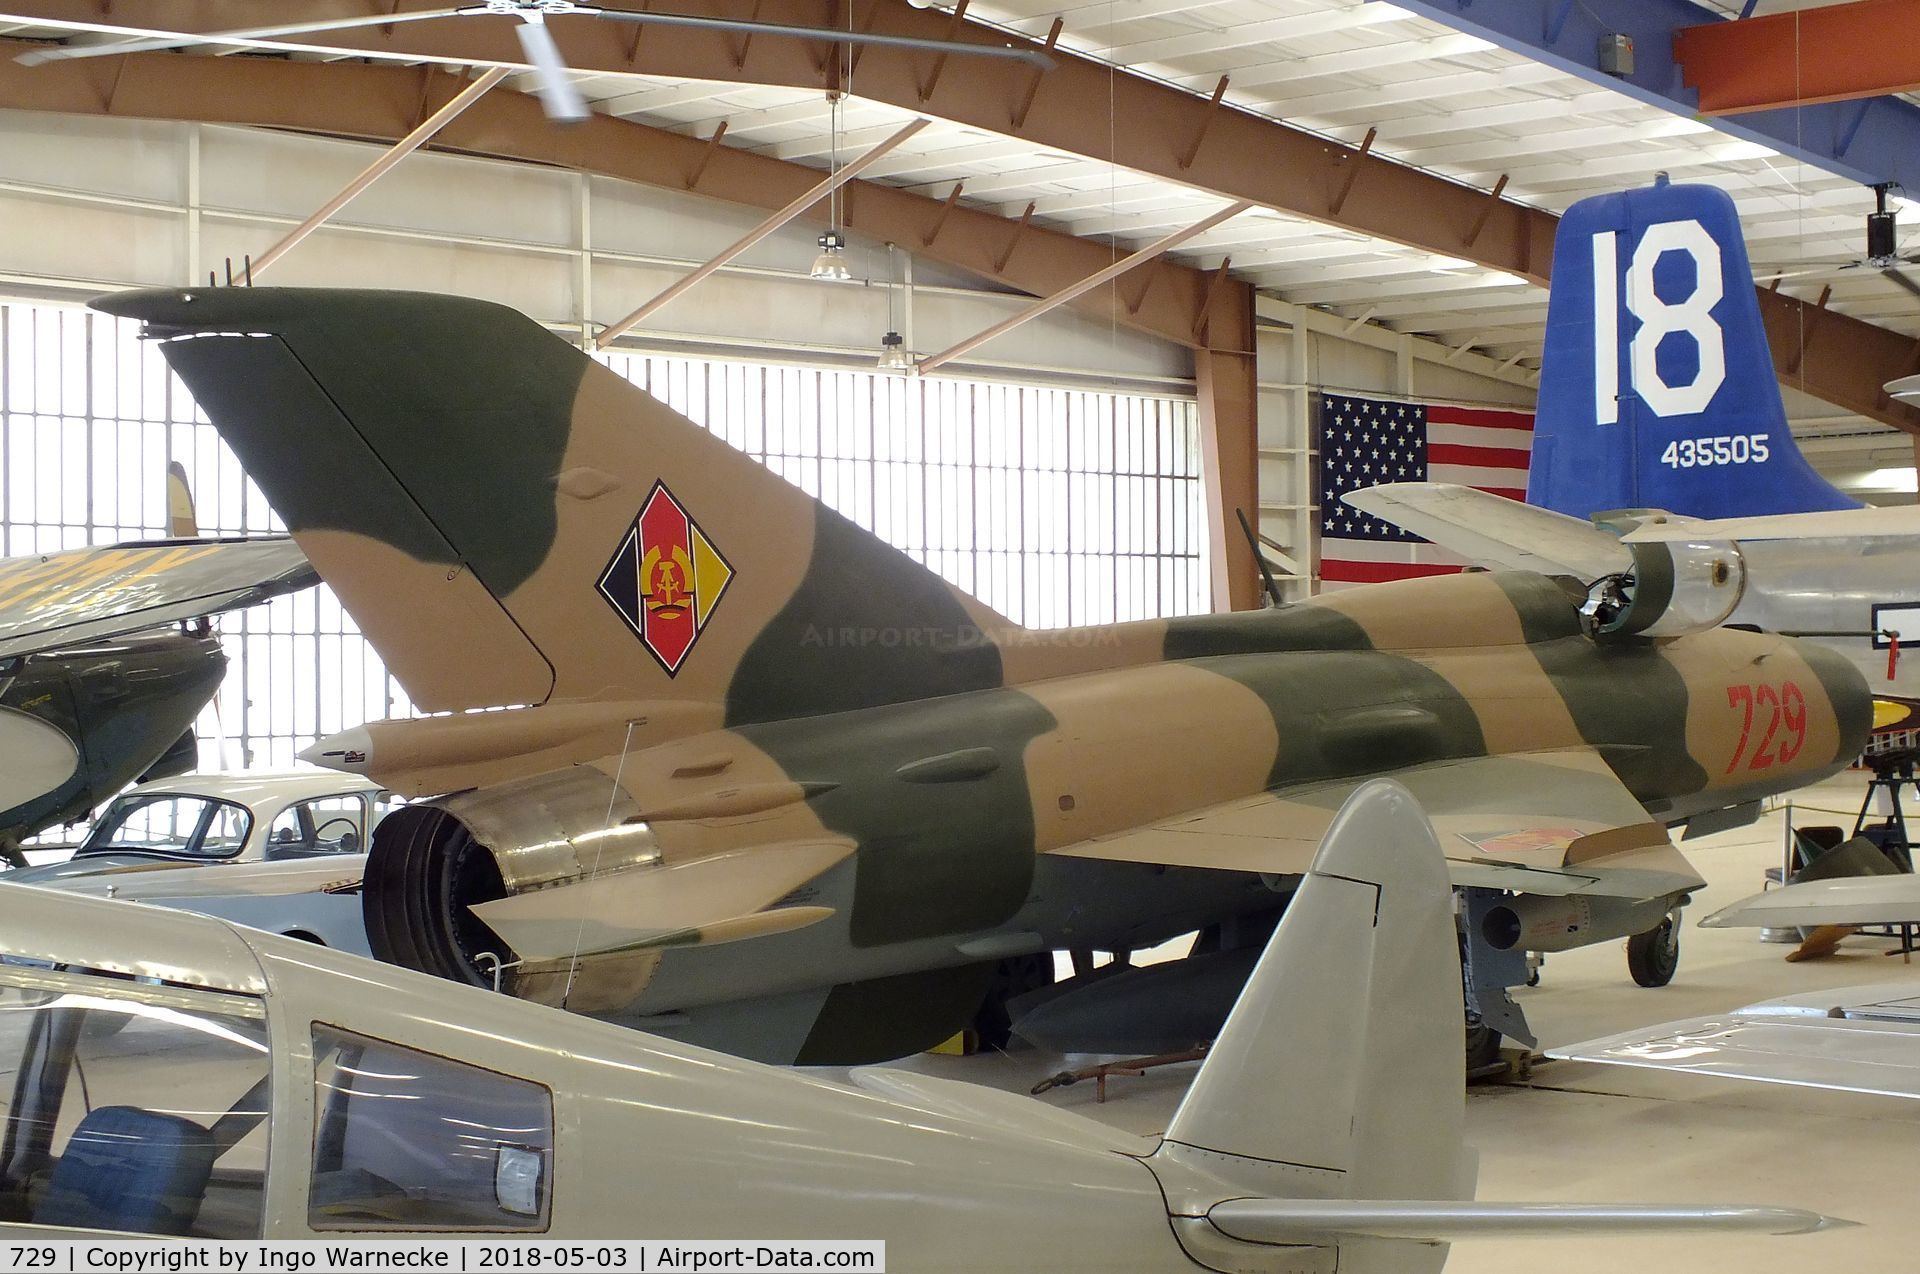 729, Mikoyan-Gurevich MiG-21SPS C/N 94A4213, Mikoyan i Gurevich MiG-21SPS FISHBED-F at the War Eagles Air Museum, Santa Teresa NM